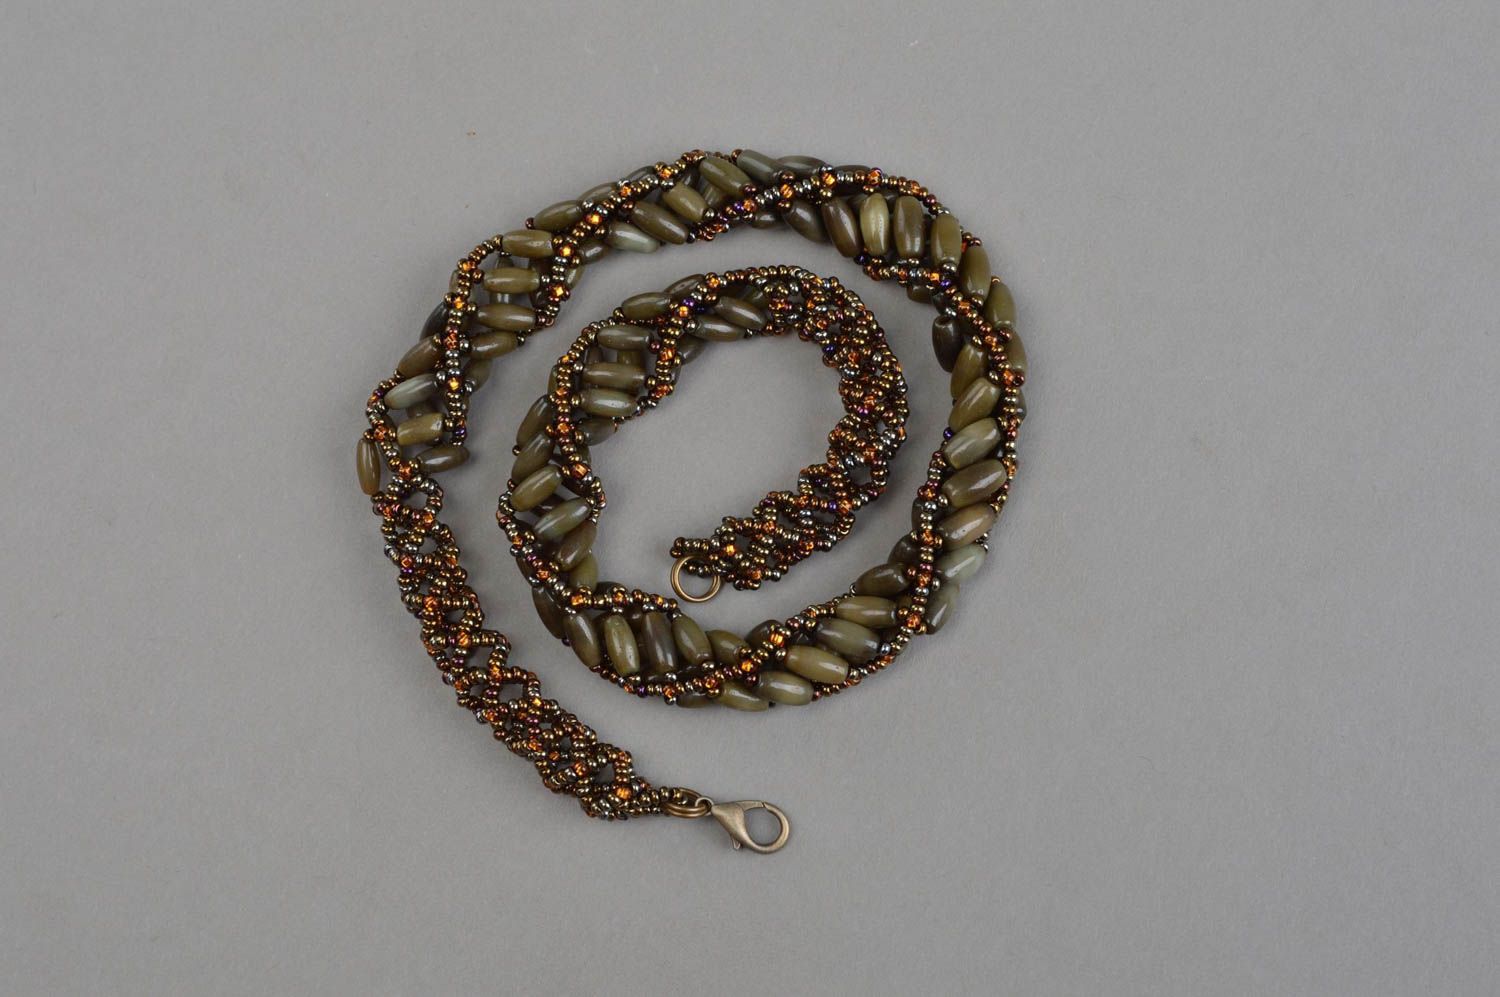 Оригинальное женское ожерелье из бисера и кошачьего камня ручной работы Хаки фото 2